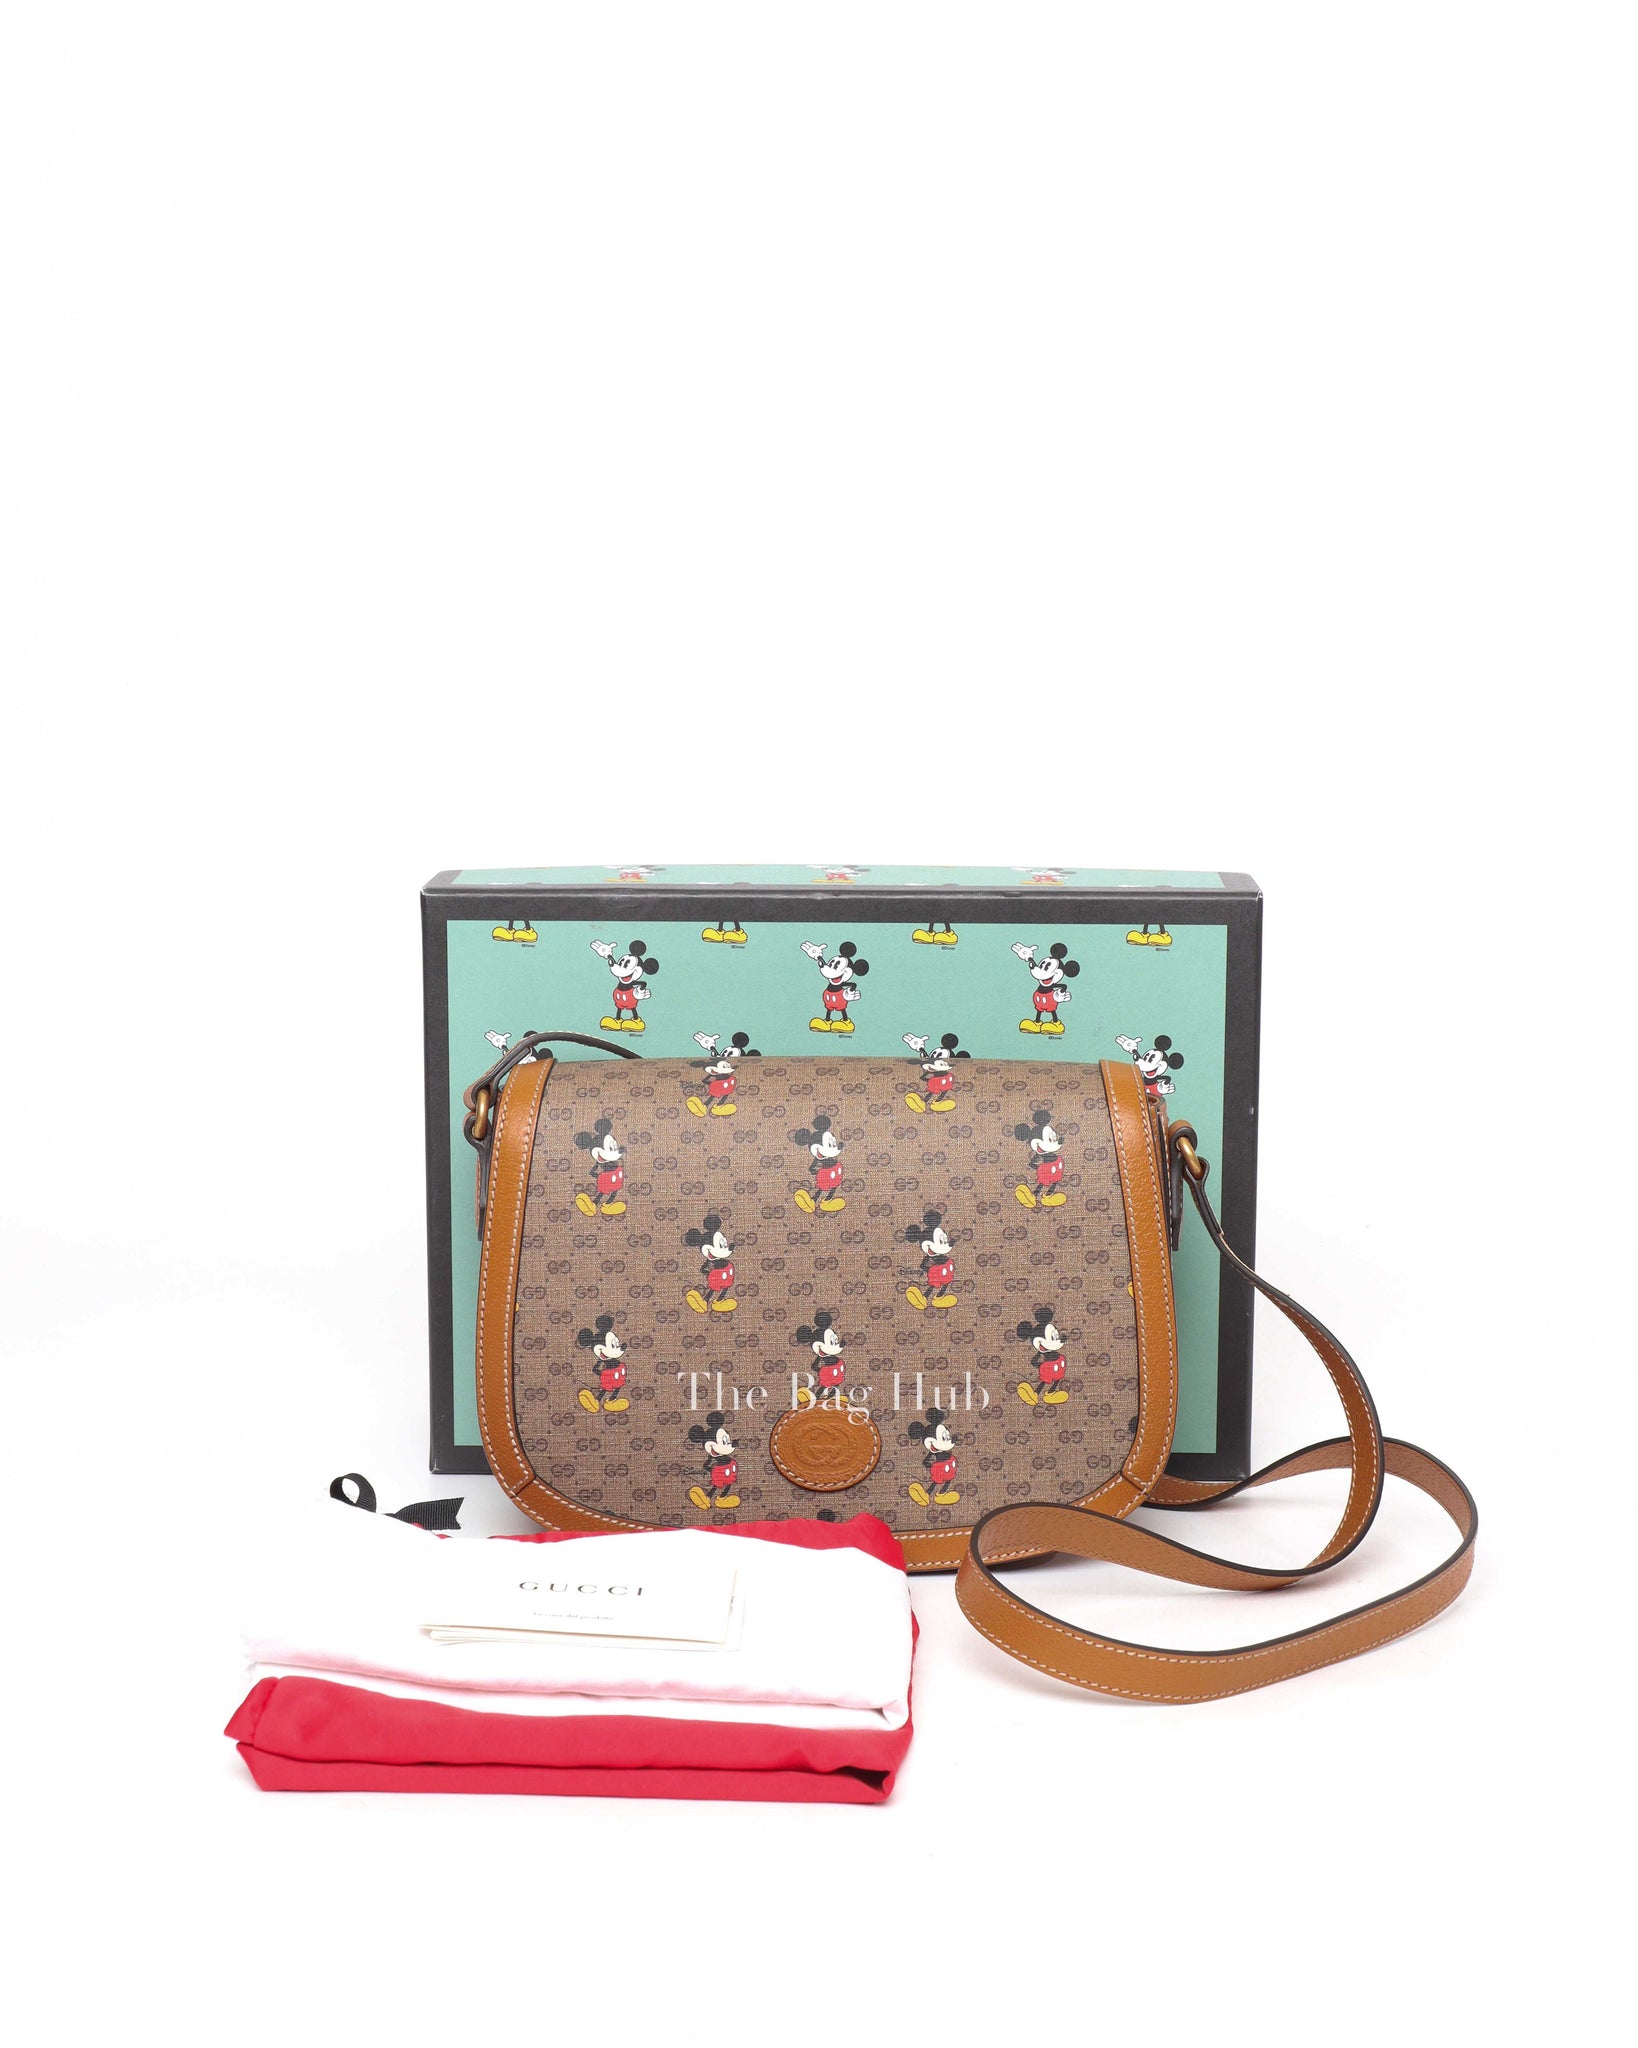 Gucci x Disney Brown Mini GG Supreme Shoulder Bag